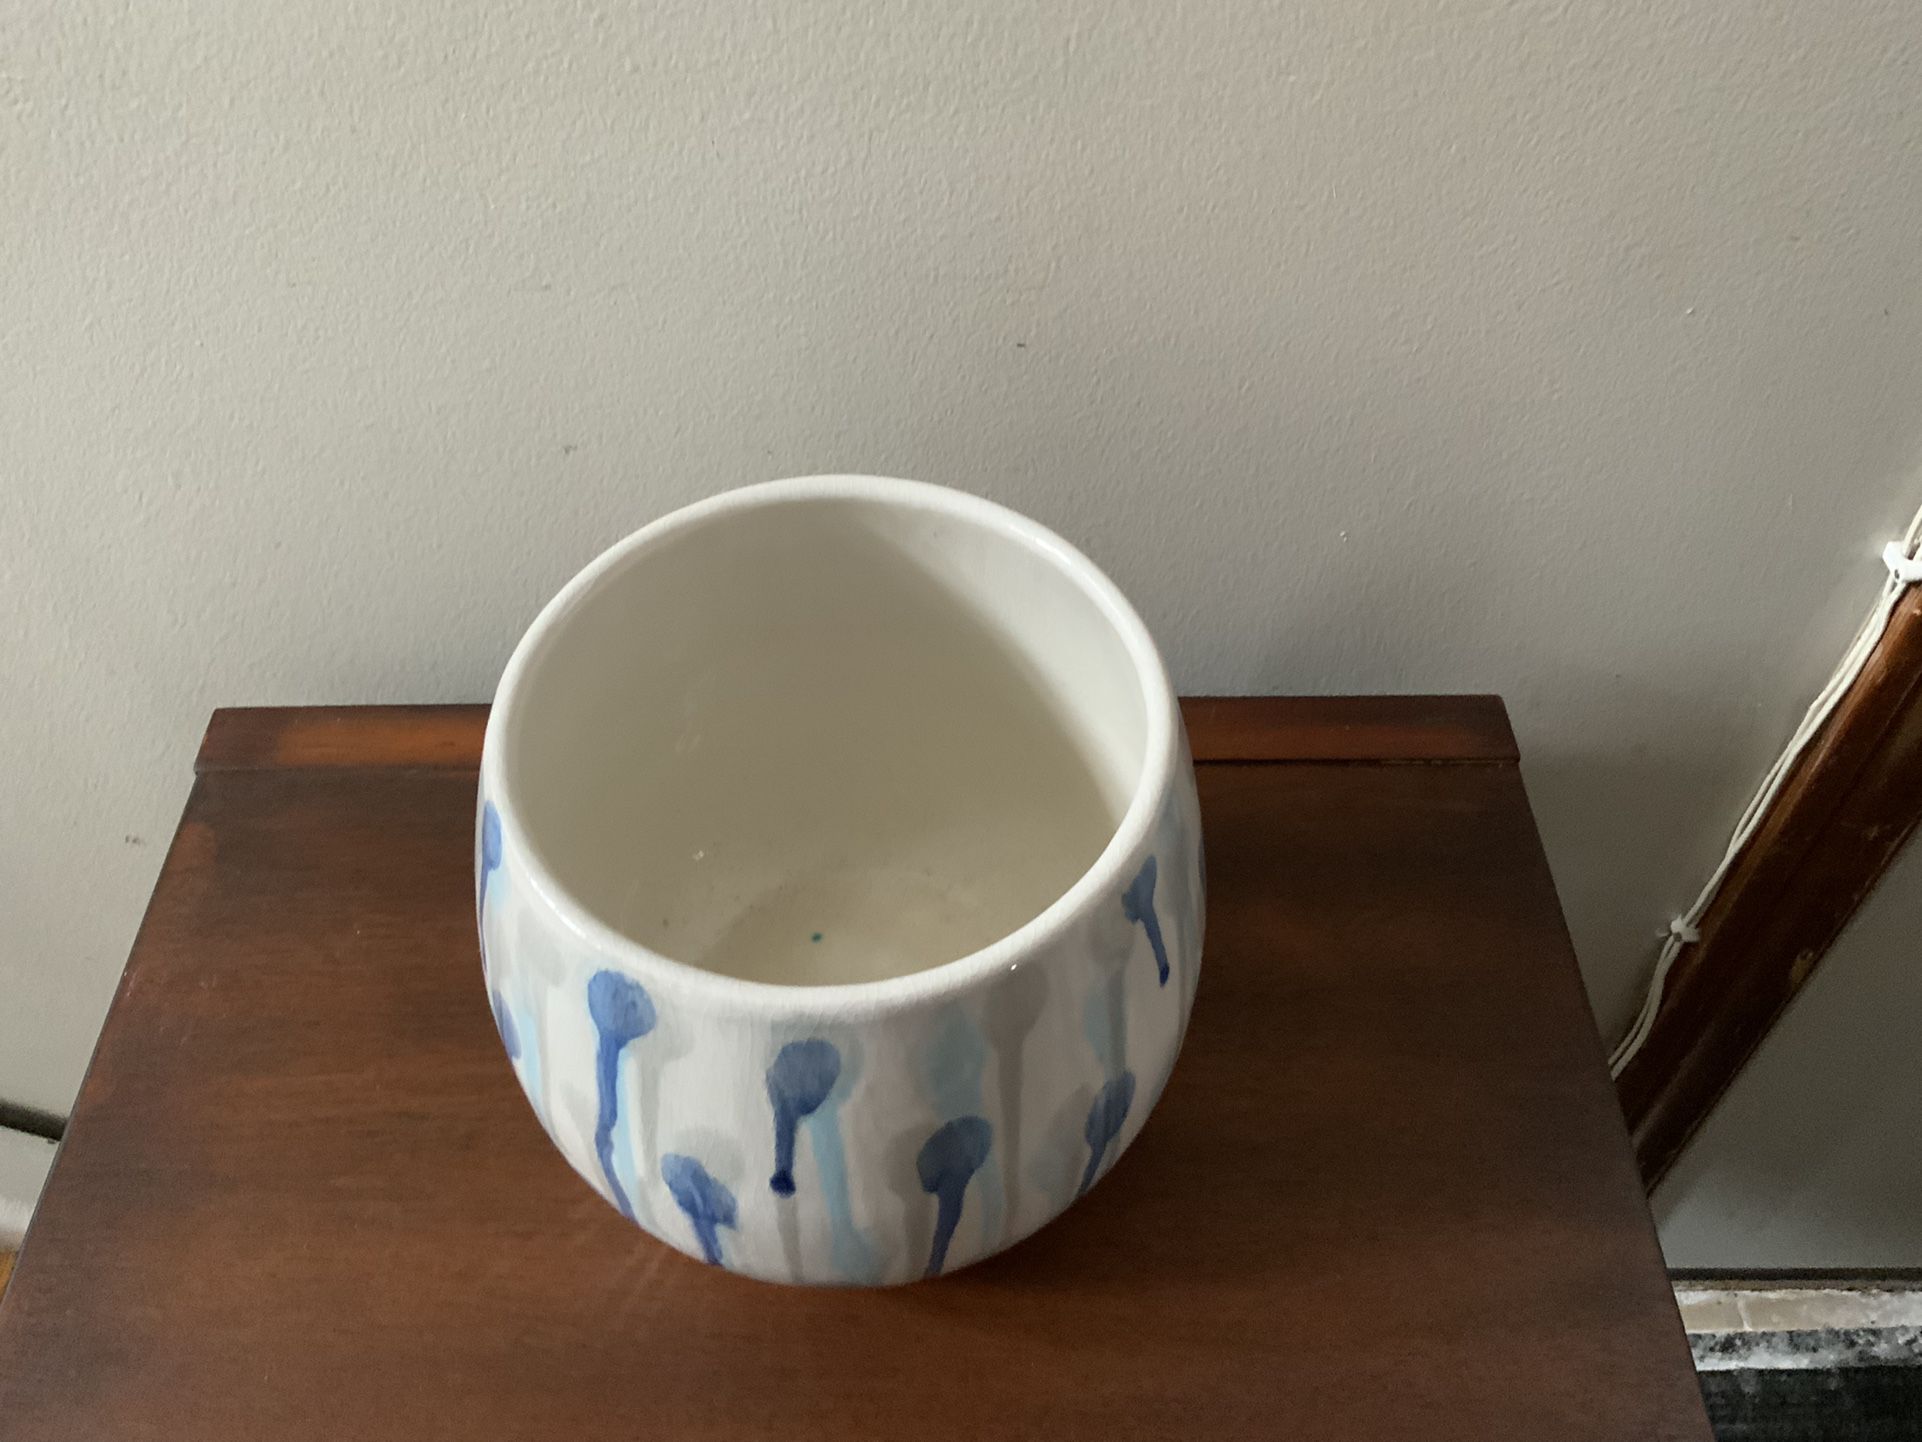 Beautiful Ceramic Pot